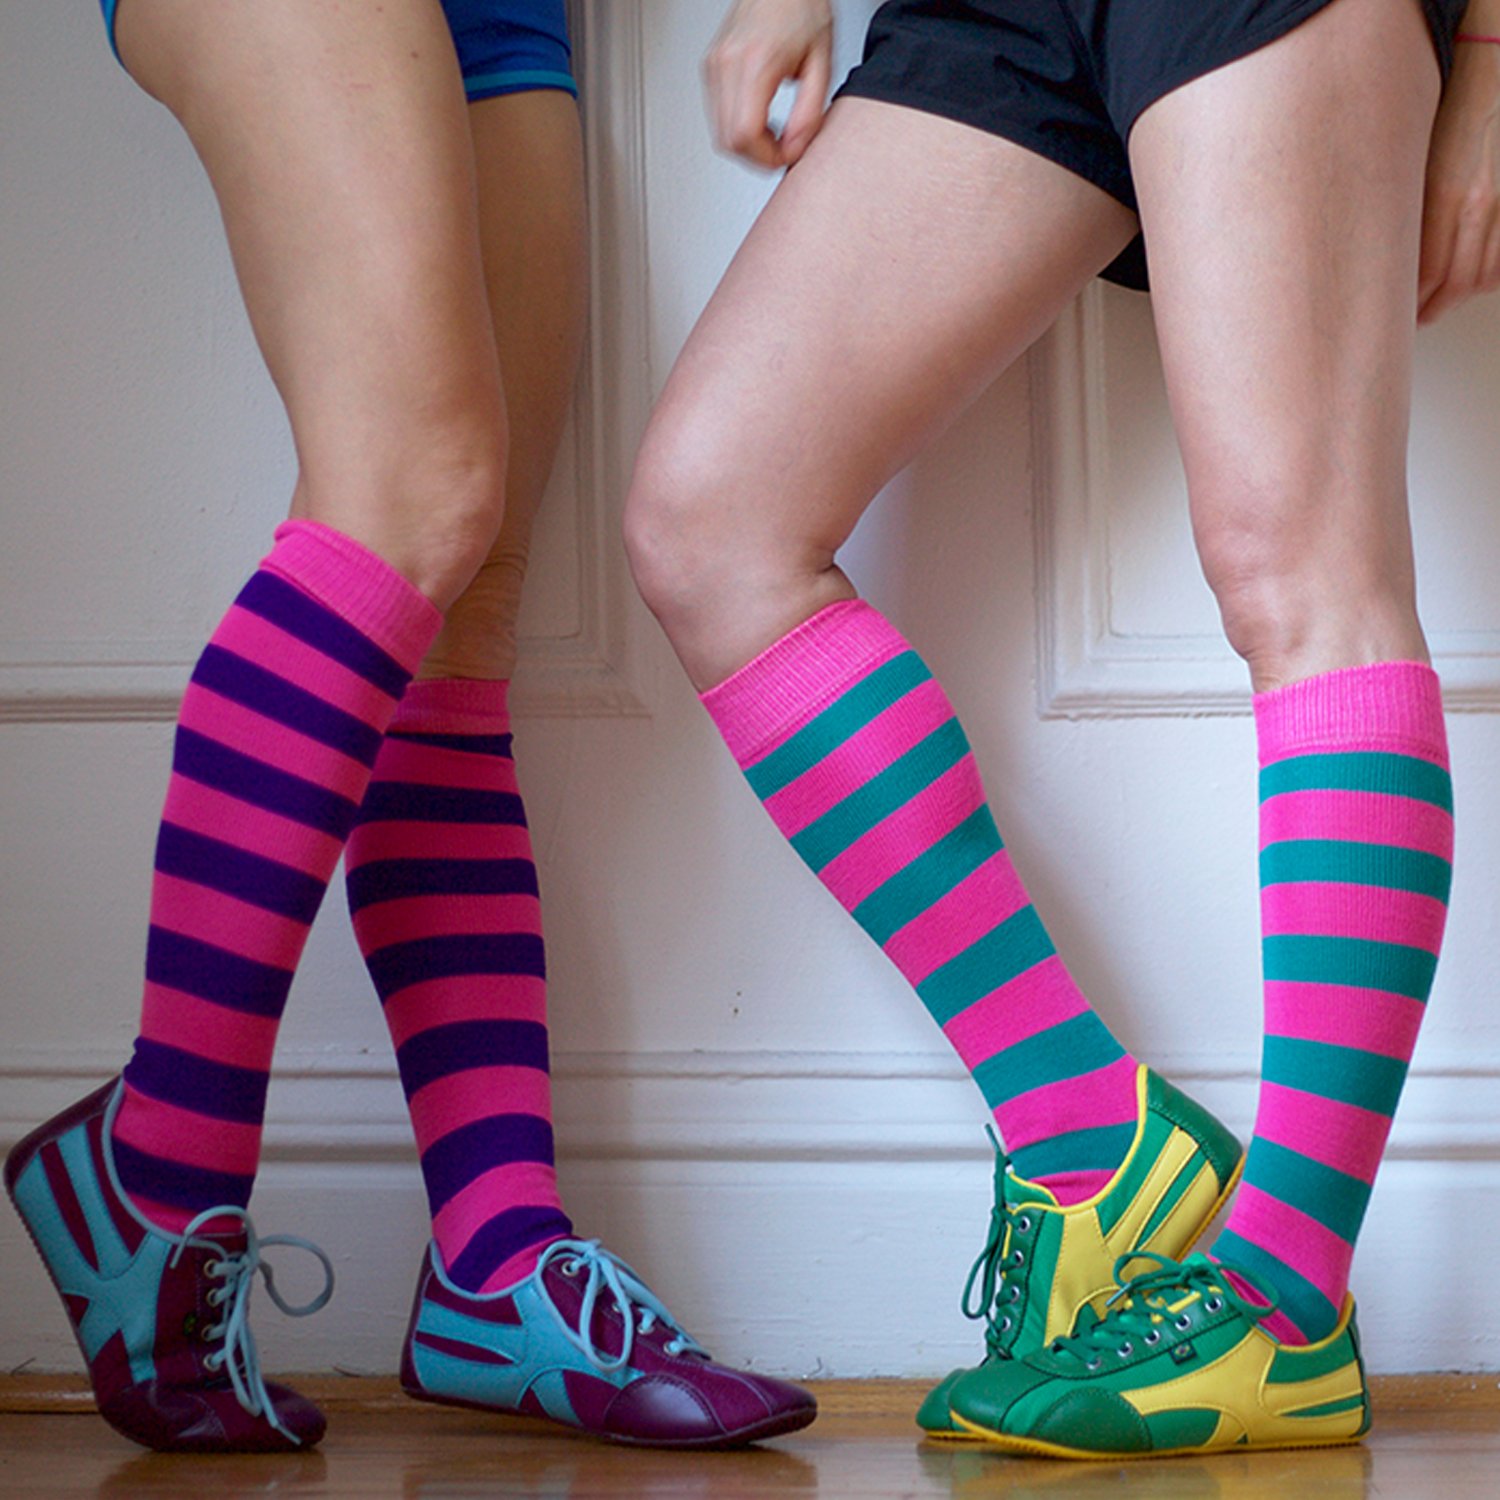 Wearing socks. Девушки в цветных носках. Девочки в цветных носочках. Носки с лосинами. Носки с леггинсами.